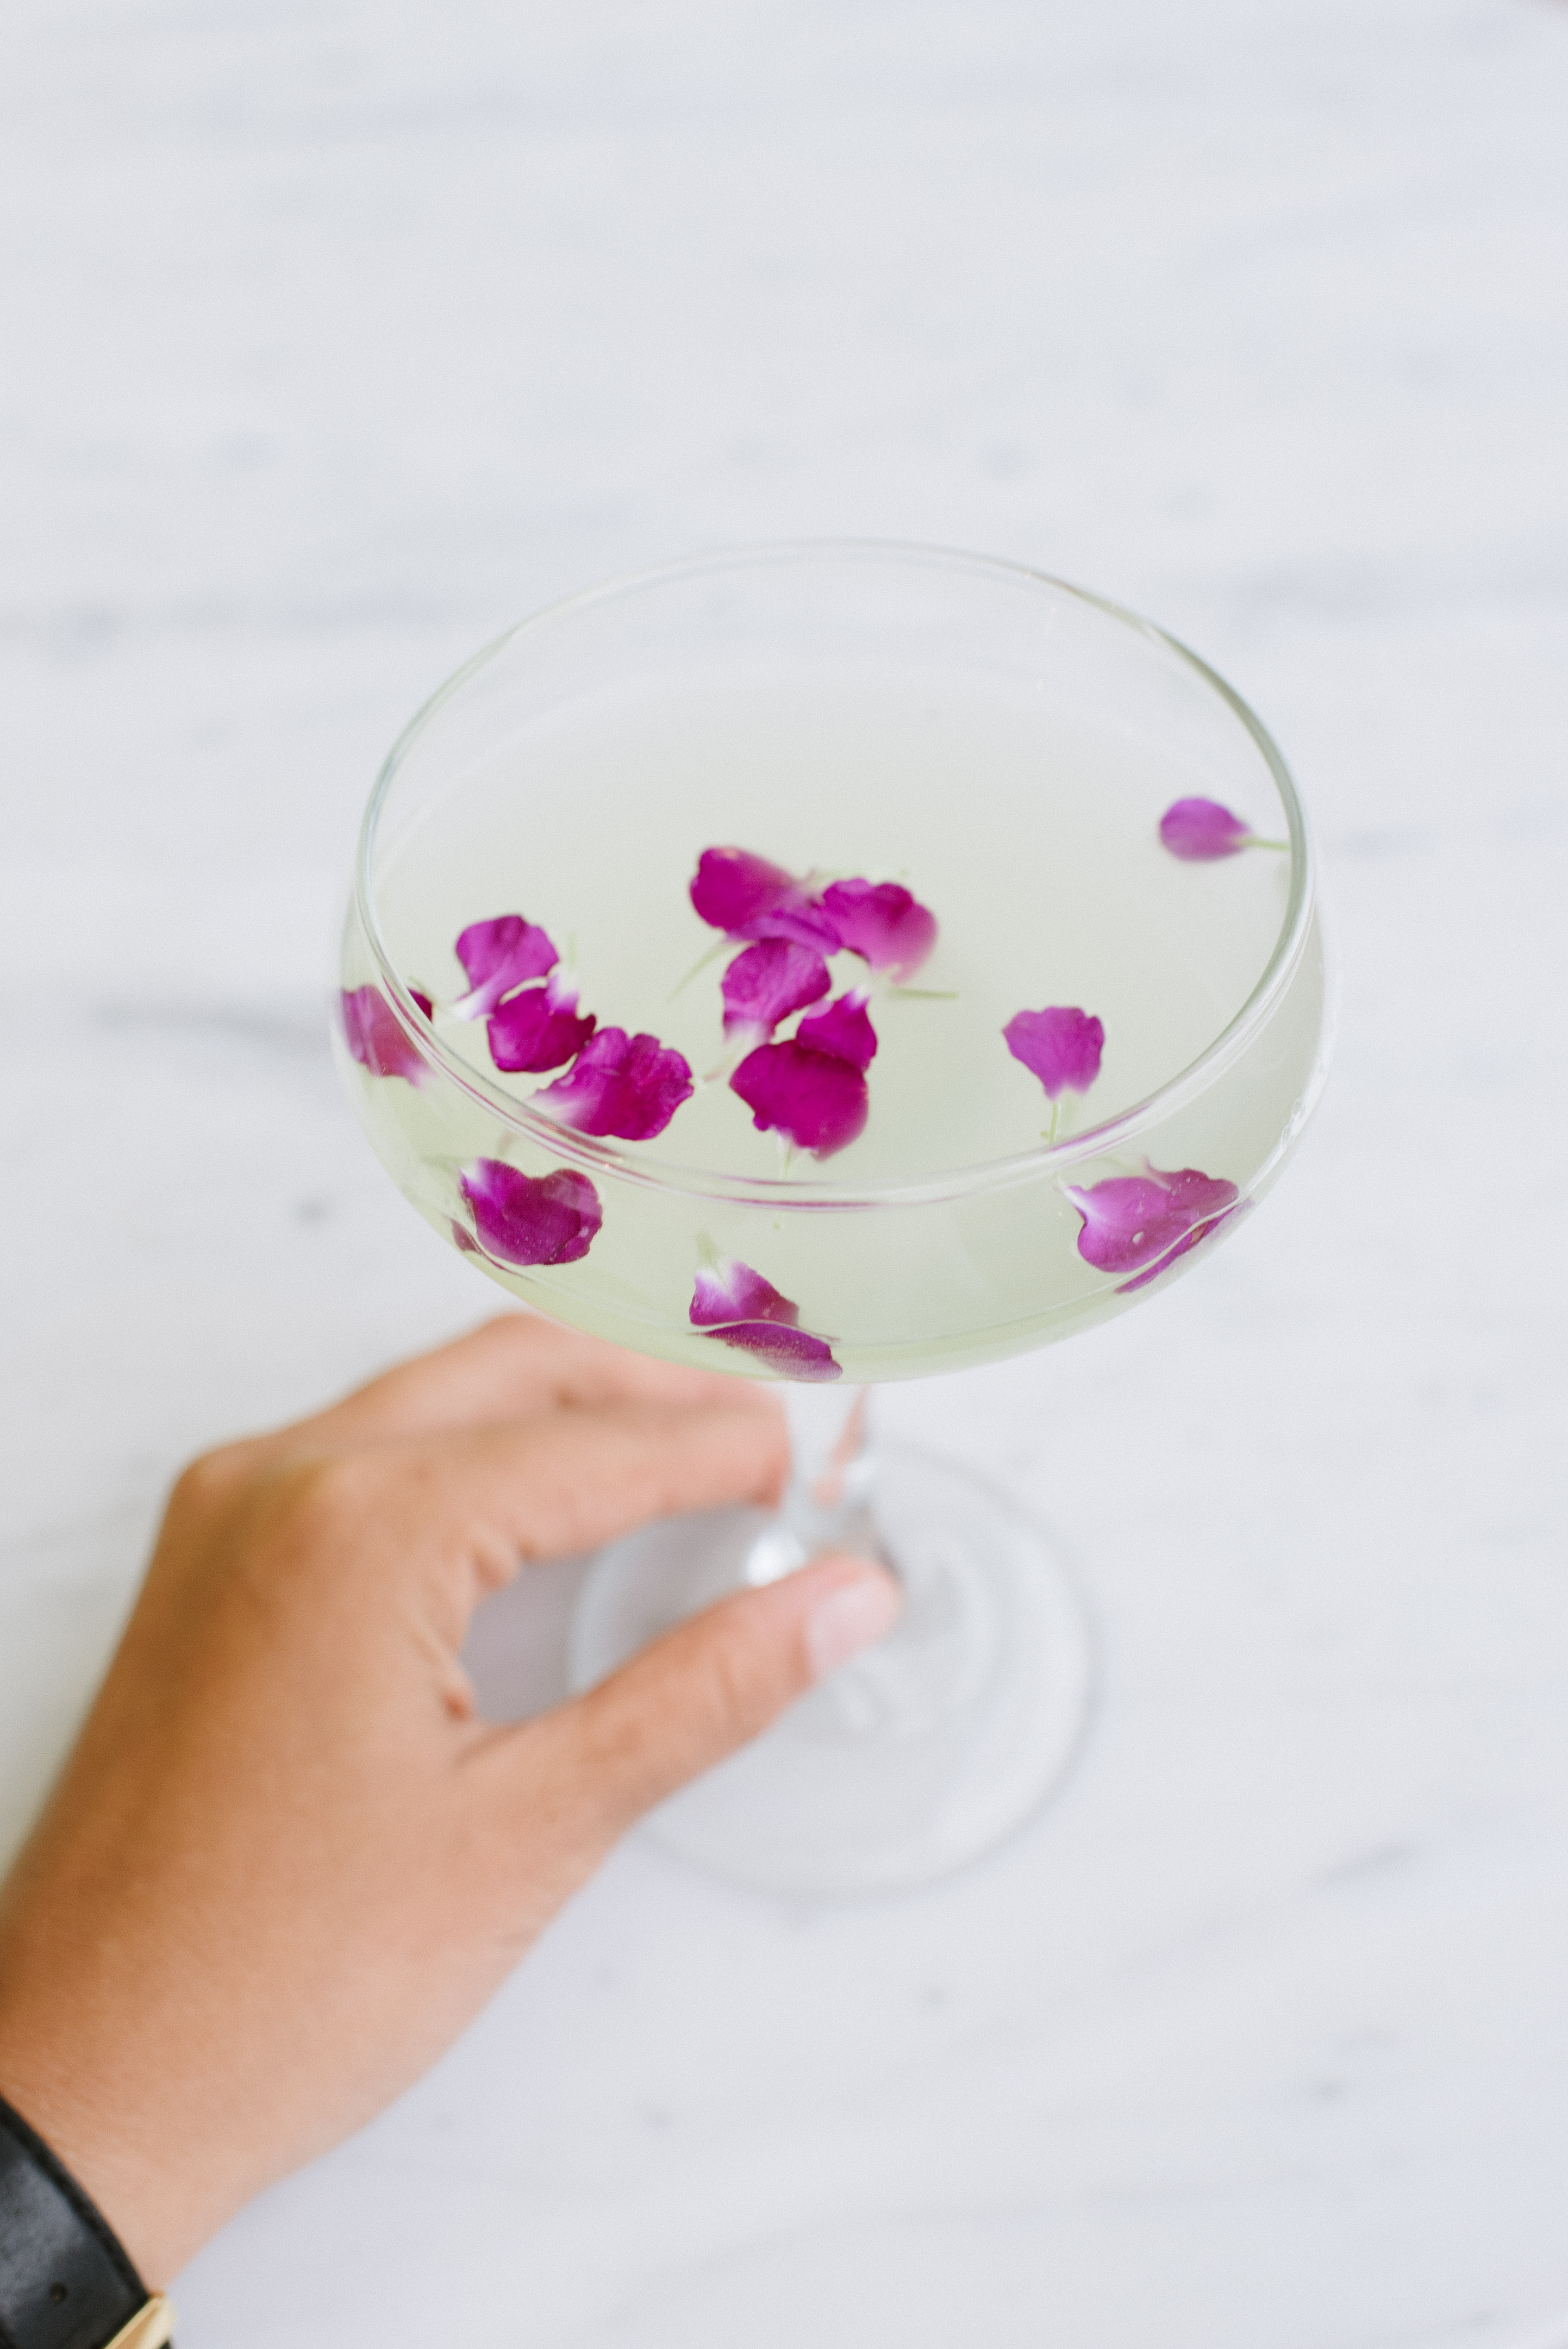 Flower Market Cocktail Recipe